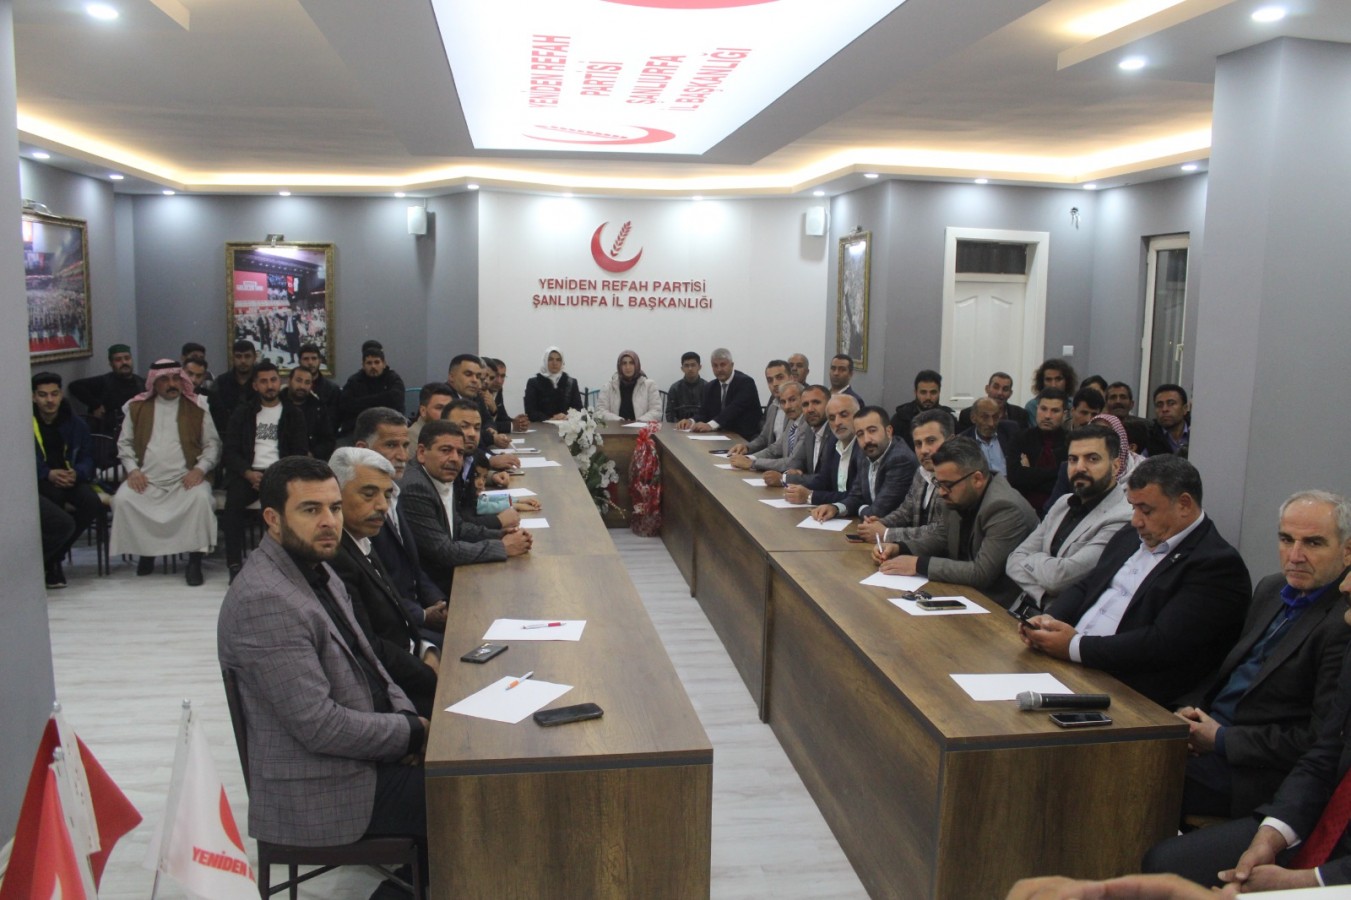 Yeniden Refah Partisi’nin Urfa milletvekili aday adayları belli oldu;